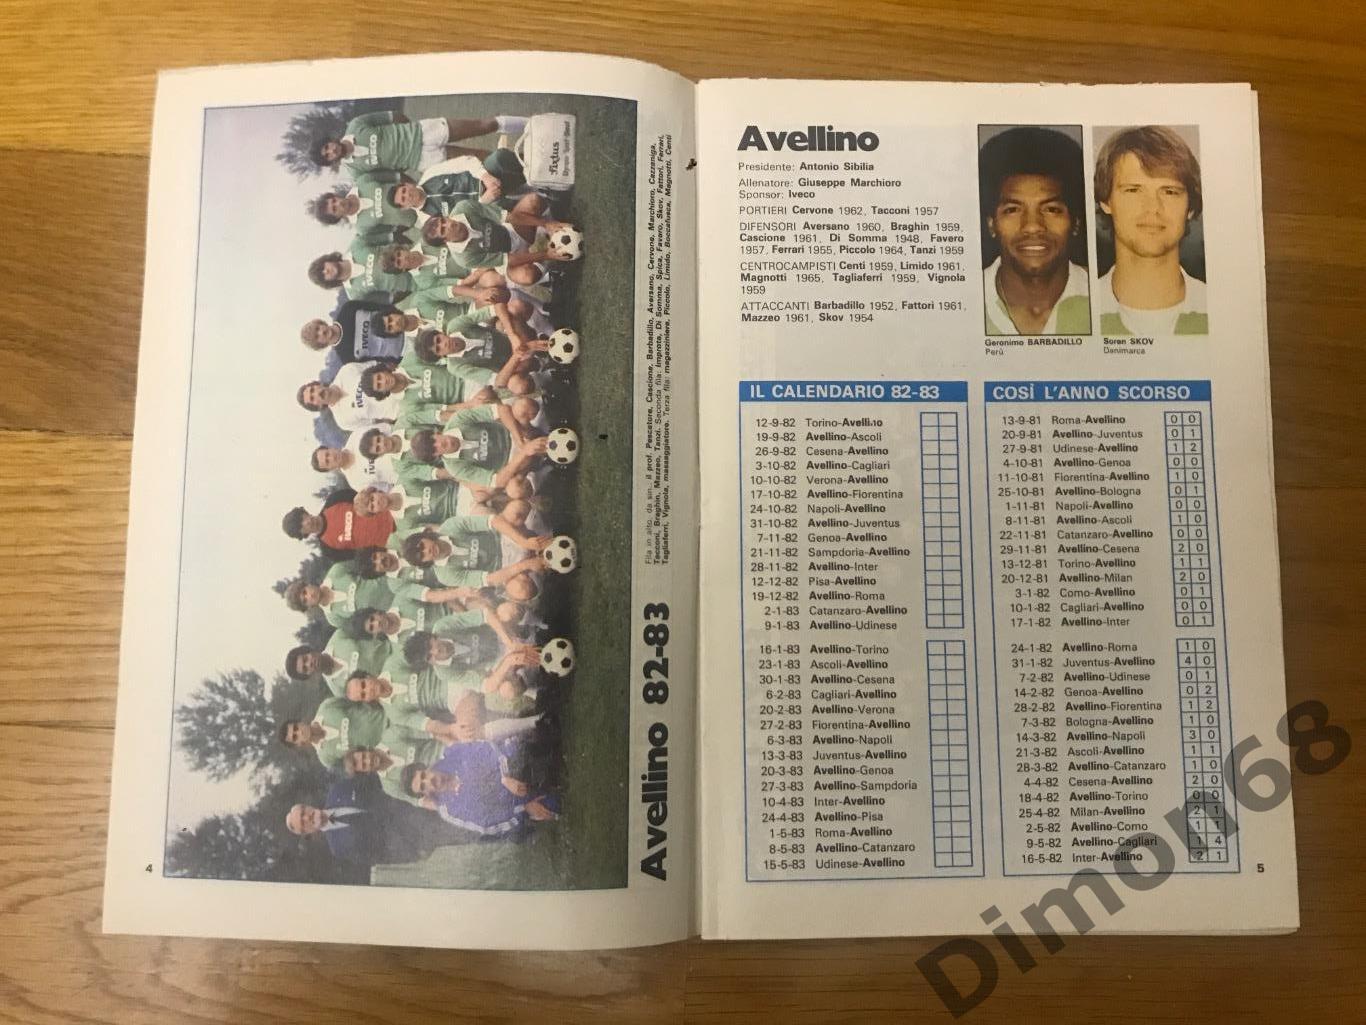 приложение из журнала гуерин спортивно чемпионат италии сезон 1982/83г 1